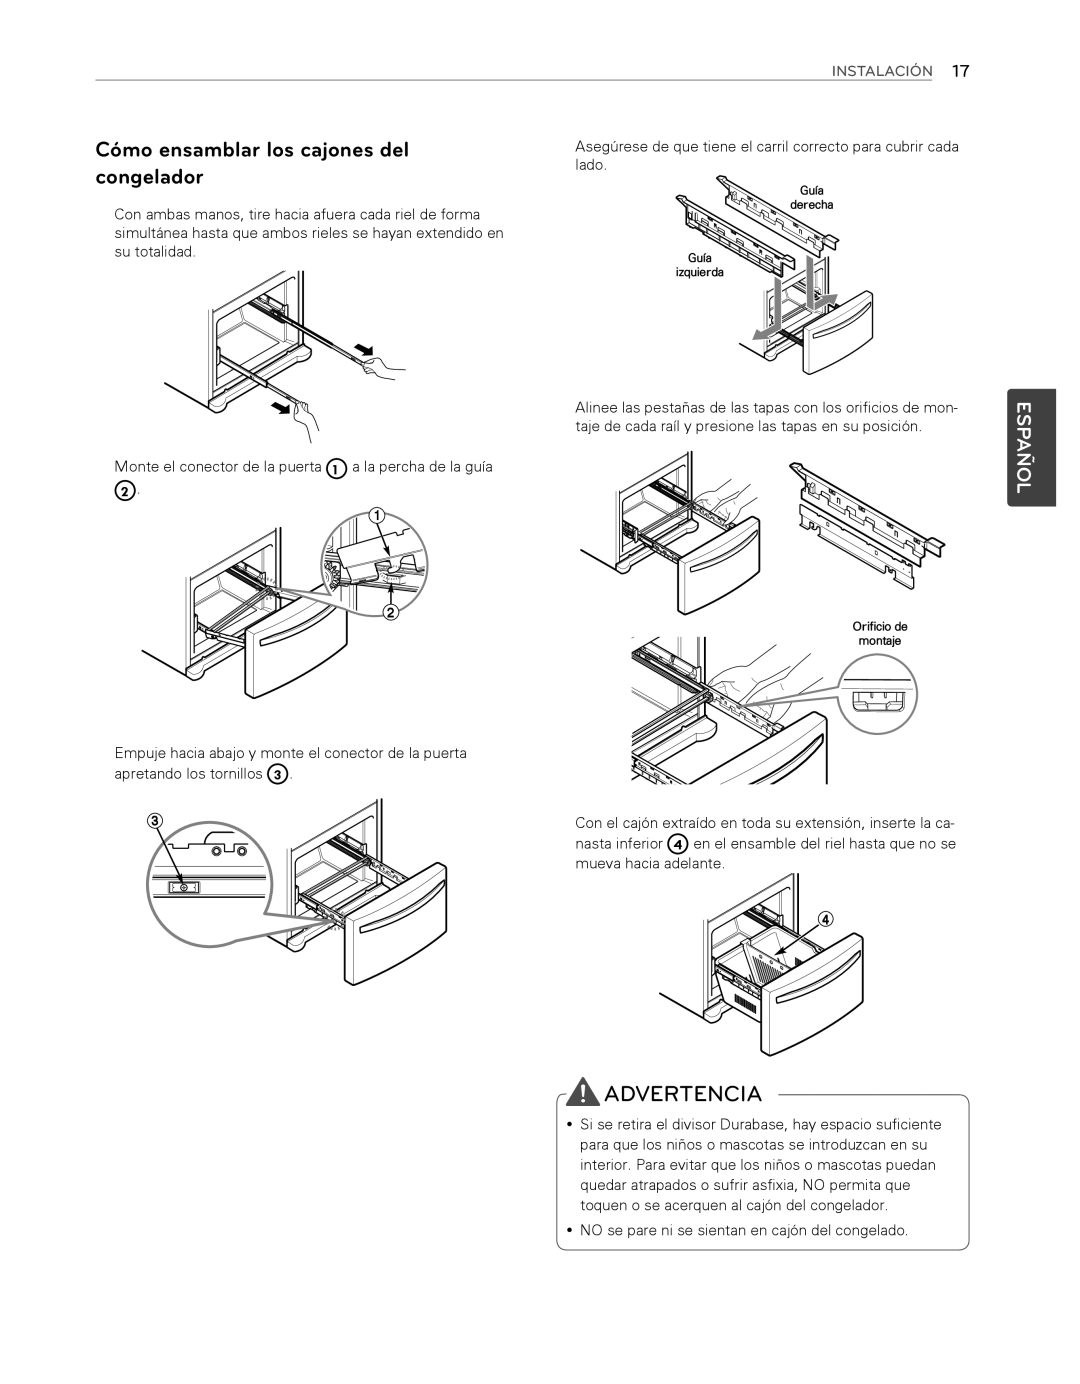 LG Electronics LFX25974ST, LFX25974SB Advertencia, Cómo ensamblar los cajones del congelador, Español, Instalación 